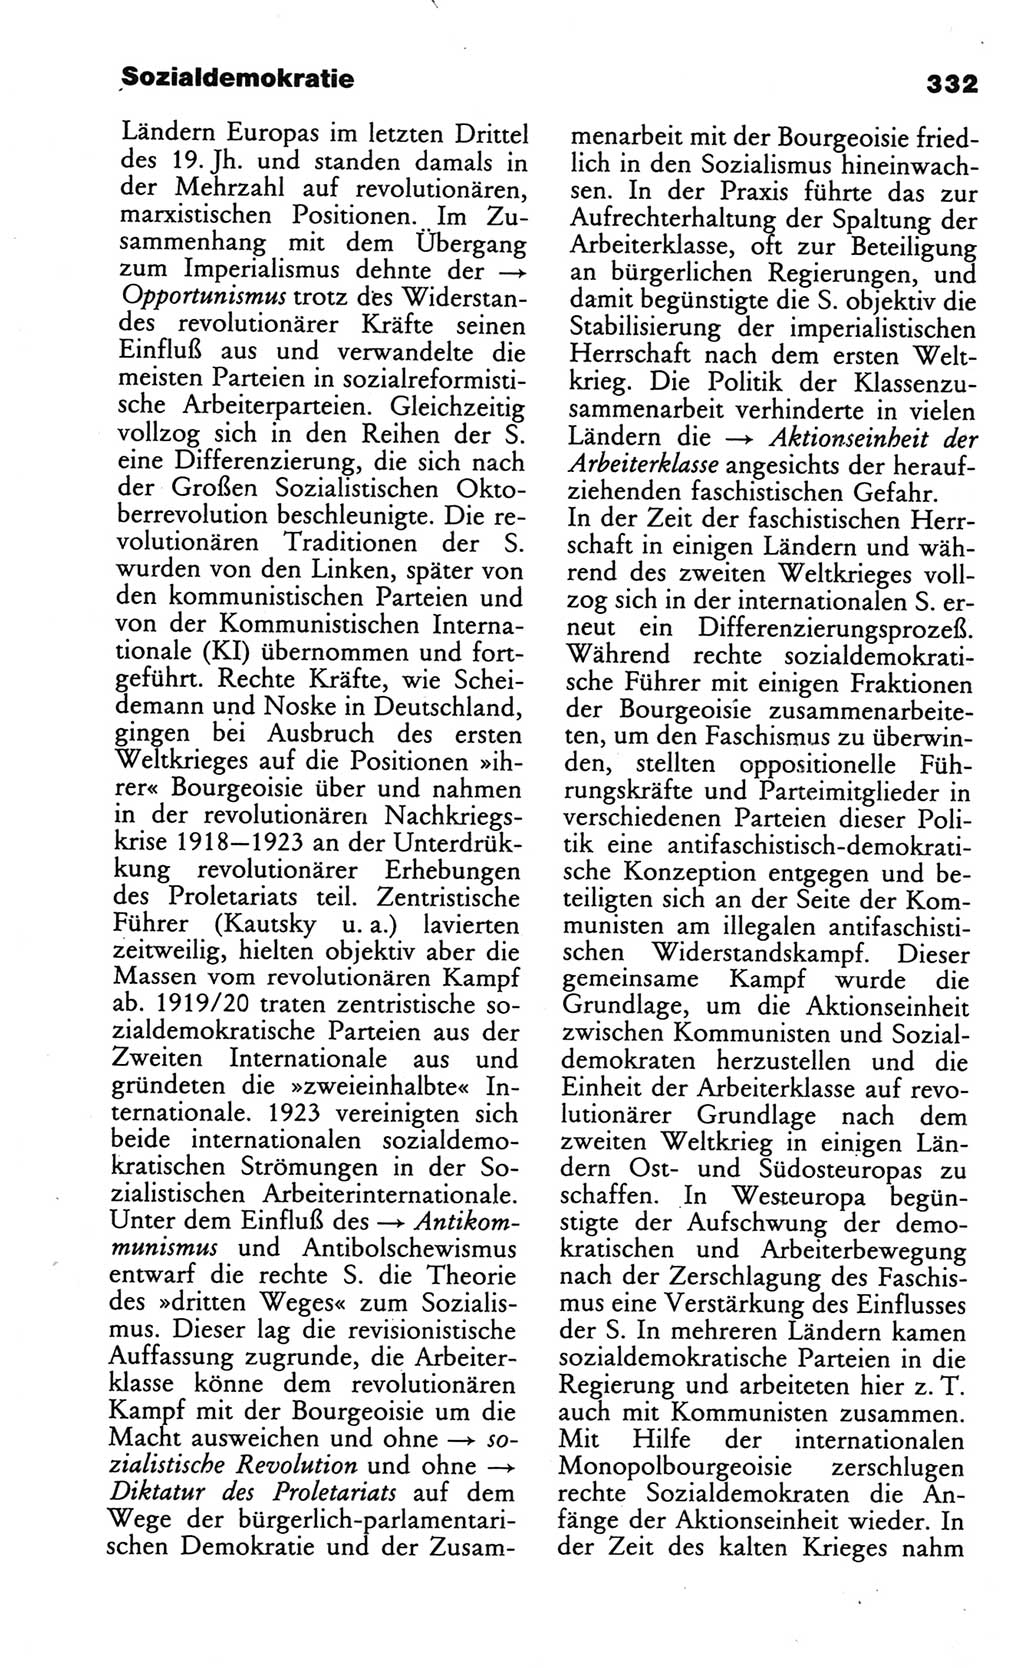 Wörterbuch des wissenschaftlichen Kommunismus [Deutsche Demokratische Republik (DDR)] 1984, Seite 332 (Wb. wiss. Komm. DDR 1984, S. 332)